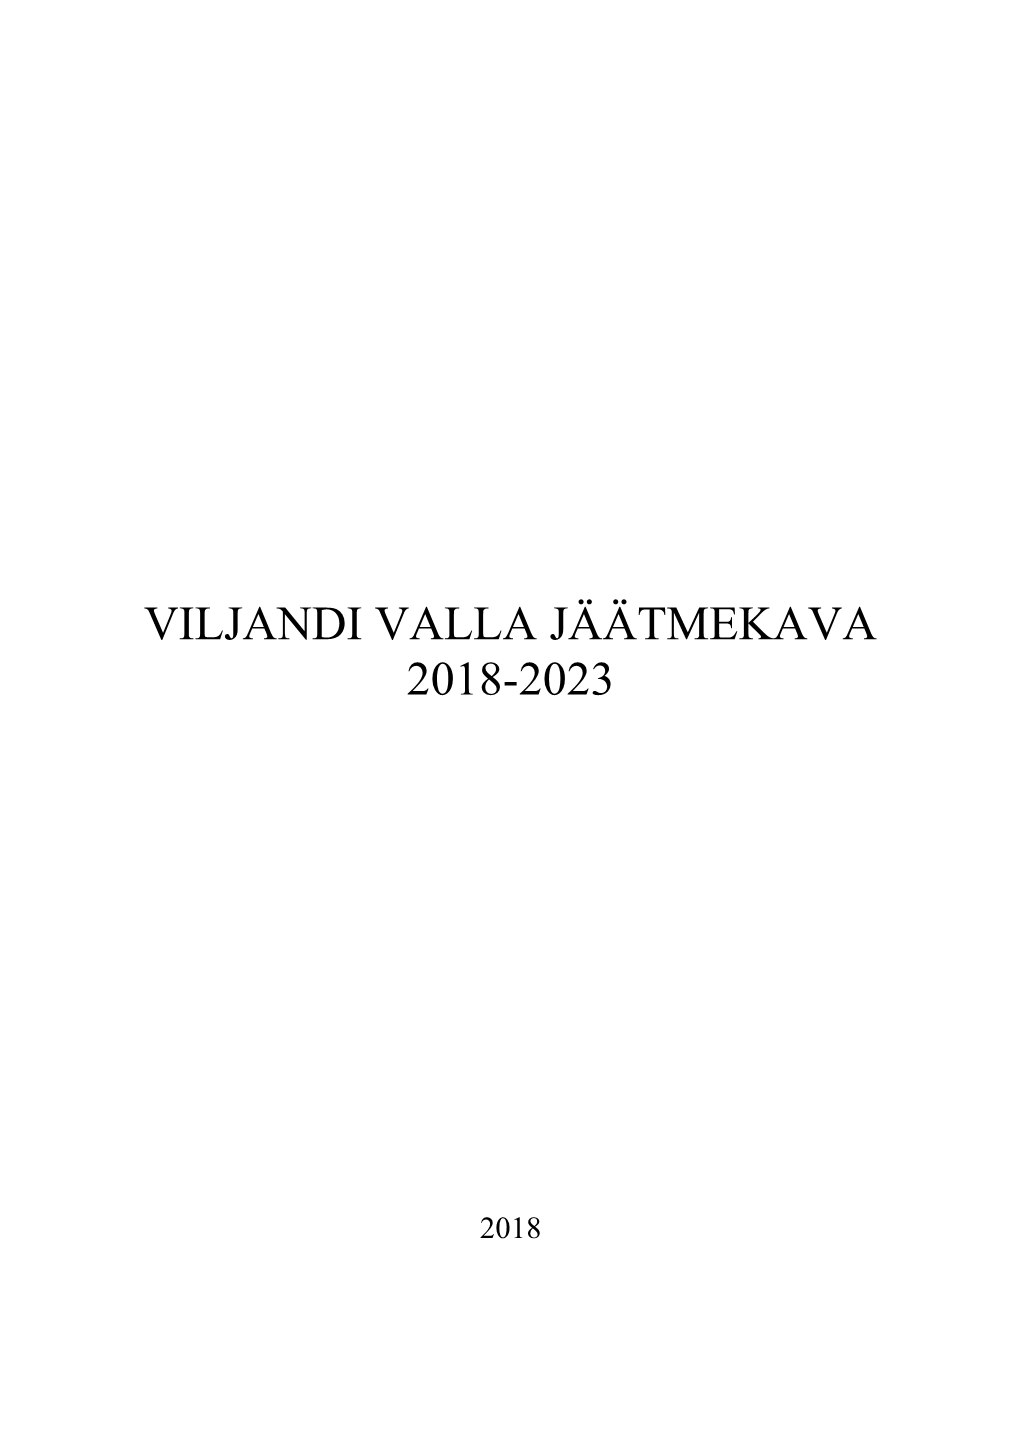 Viljandi Valla Jäätmekava 2018-2023